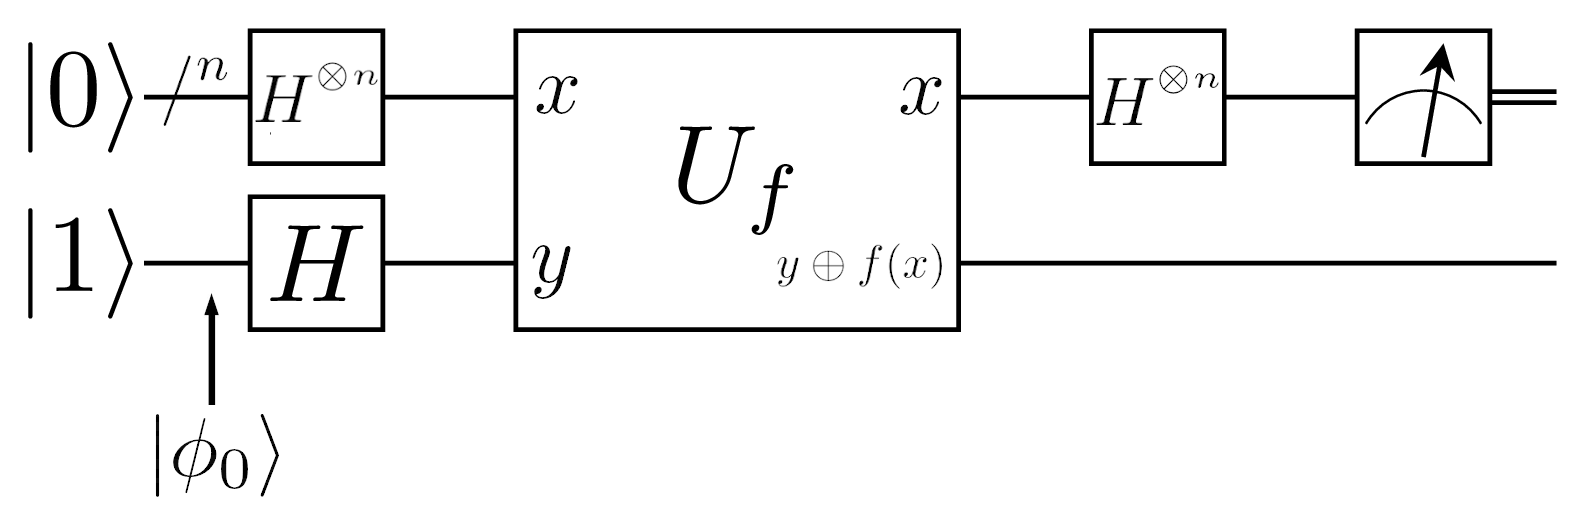 Circuit algorithme de Deutsch-Josza